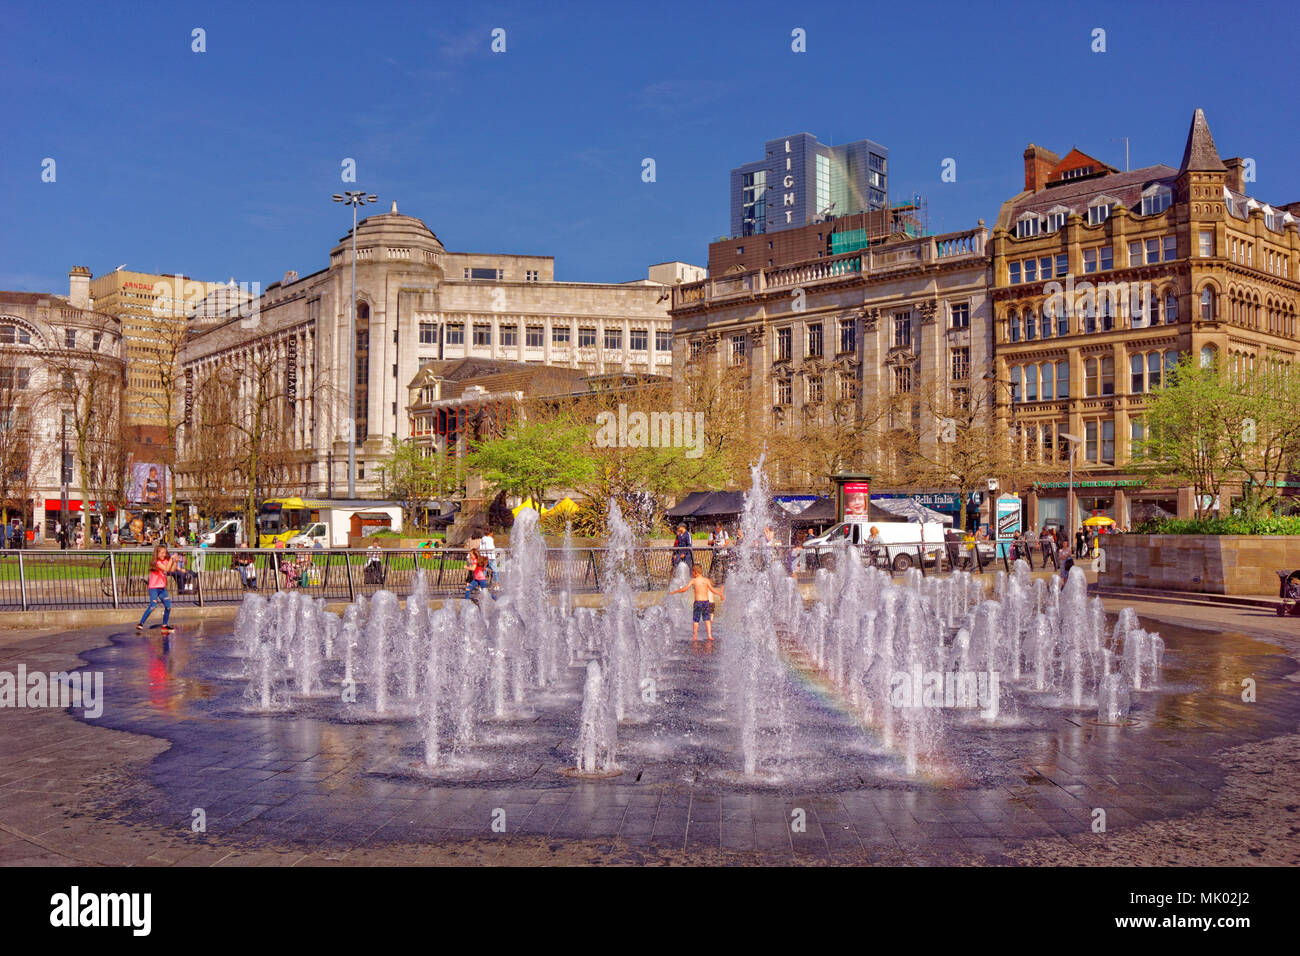 Les jardins de Piccadilly et fontaines dans le centre-ville de Manchester, Greater Manchester, Angleterre, Royaume-Uni. Banque D'Images